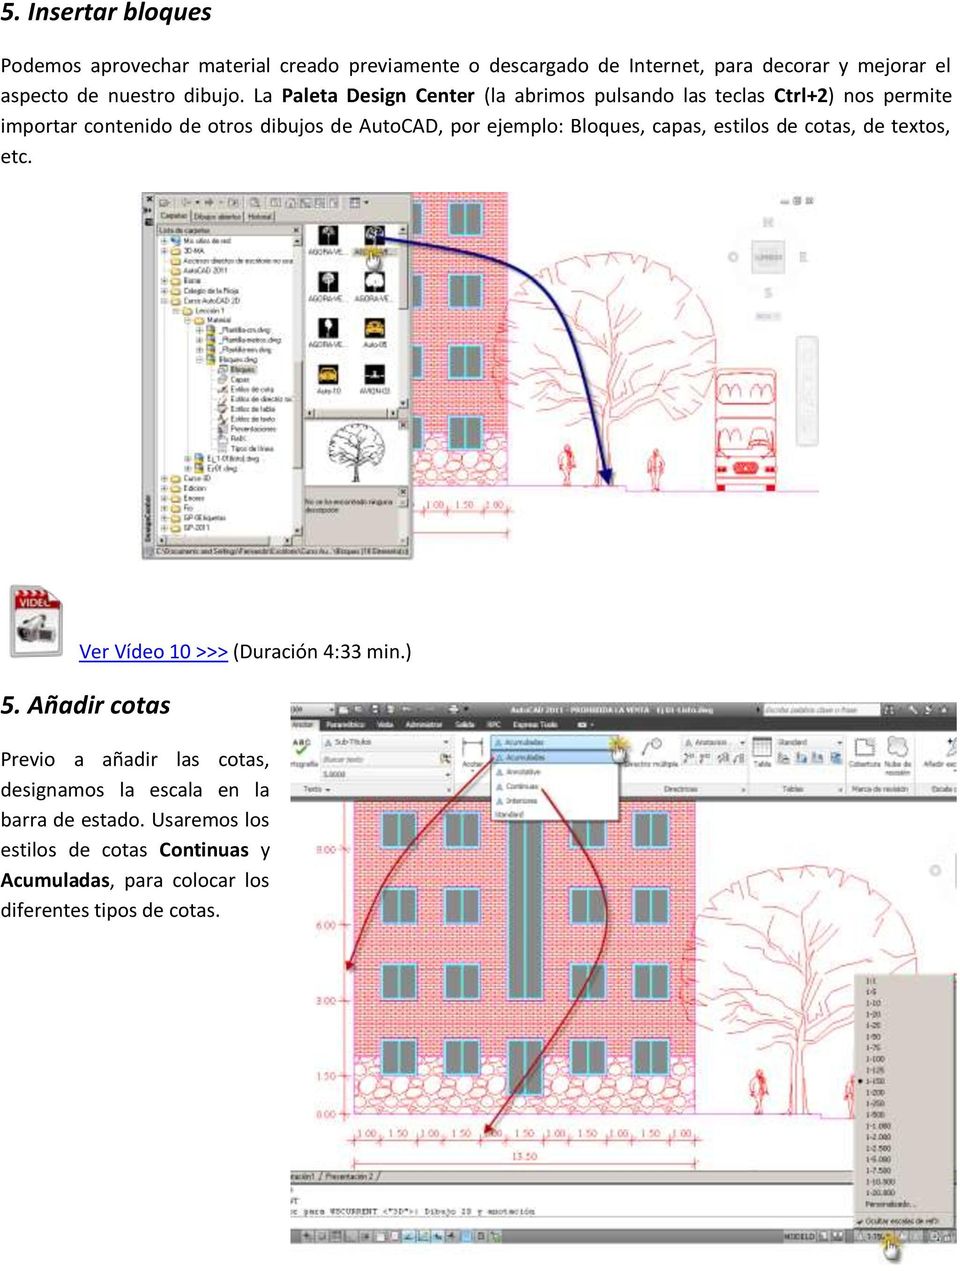 La Paleta Design Center (la abrimos pulsando las teclas Ctrl+2) nos permite importar contenido de otros dibujos de AutoCAD, por ejemplo: